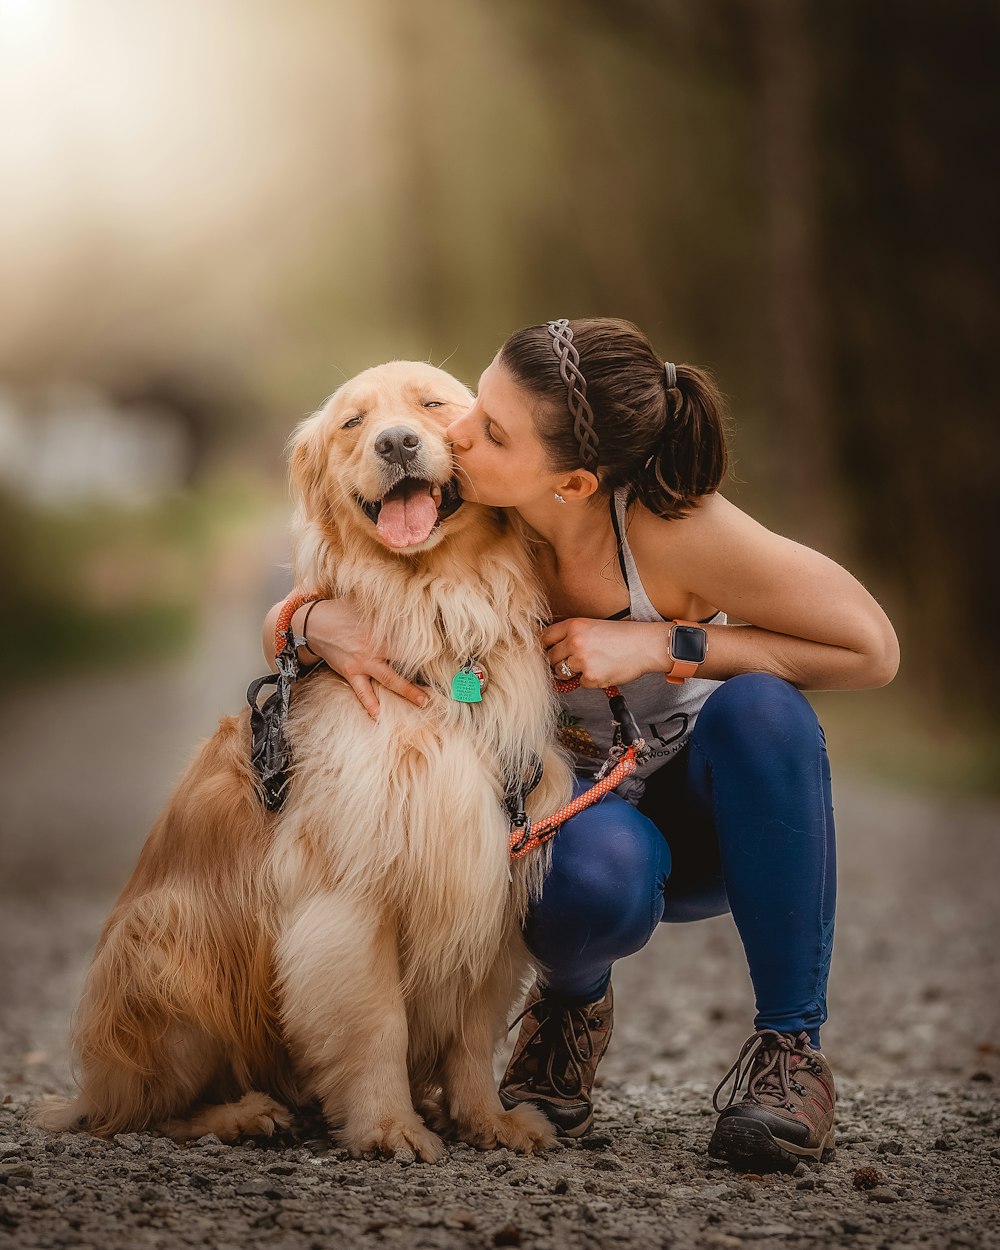 Una mujer besando a su perro en la mejilla